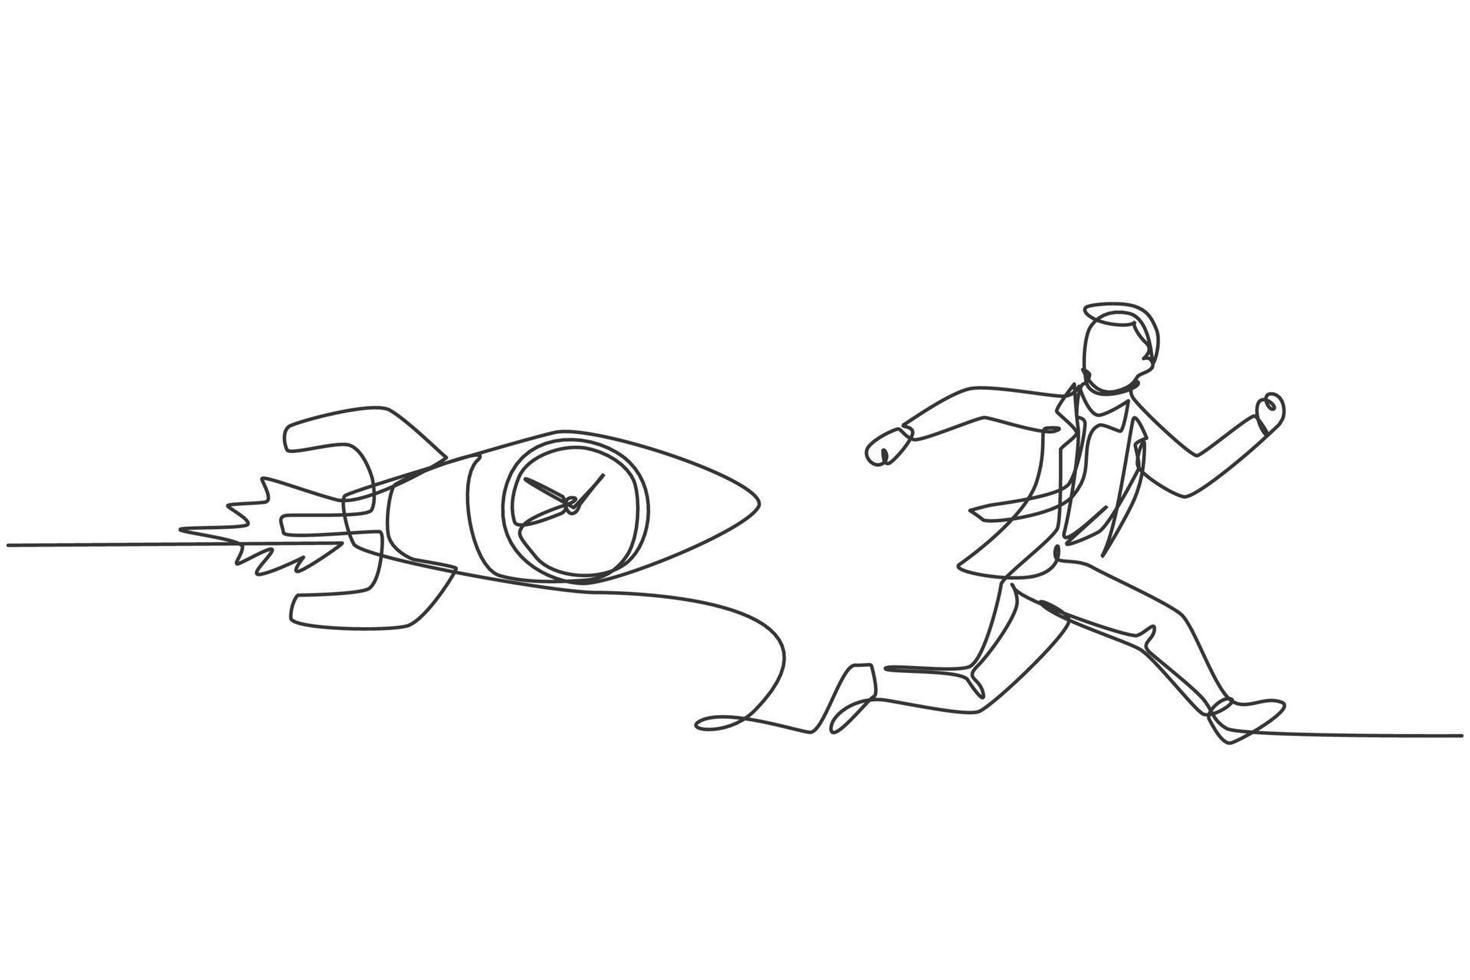 Contínuo um desenho de linha jovem trabalhador perseguido por foguete voador com relógio analógico dentro. conceito minimalista de negócios de gerenciamento de horas de ponta. ilustração gráfica de vetor de desenho de linha única